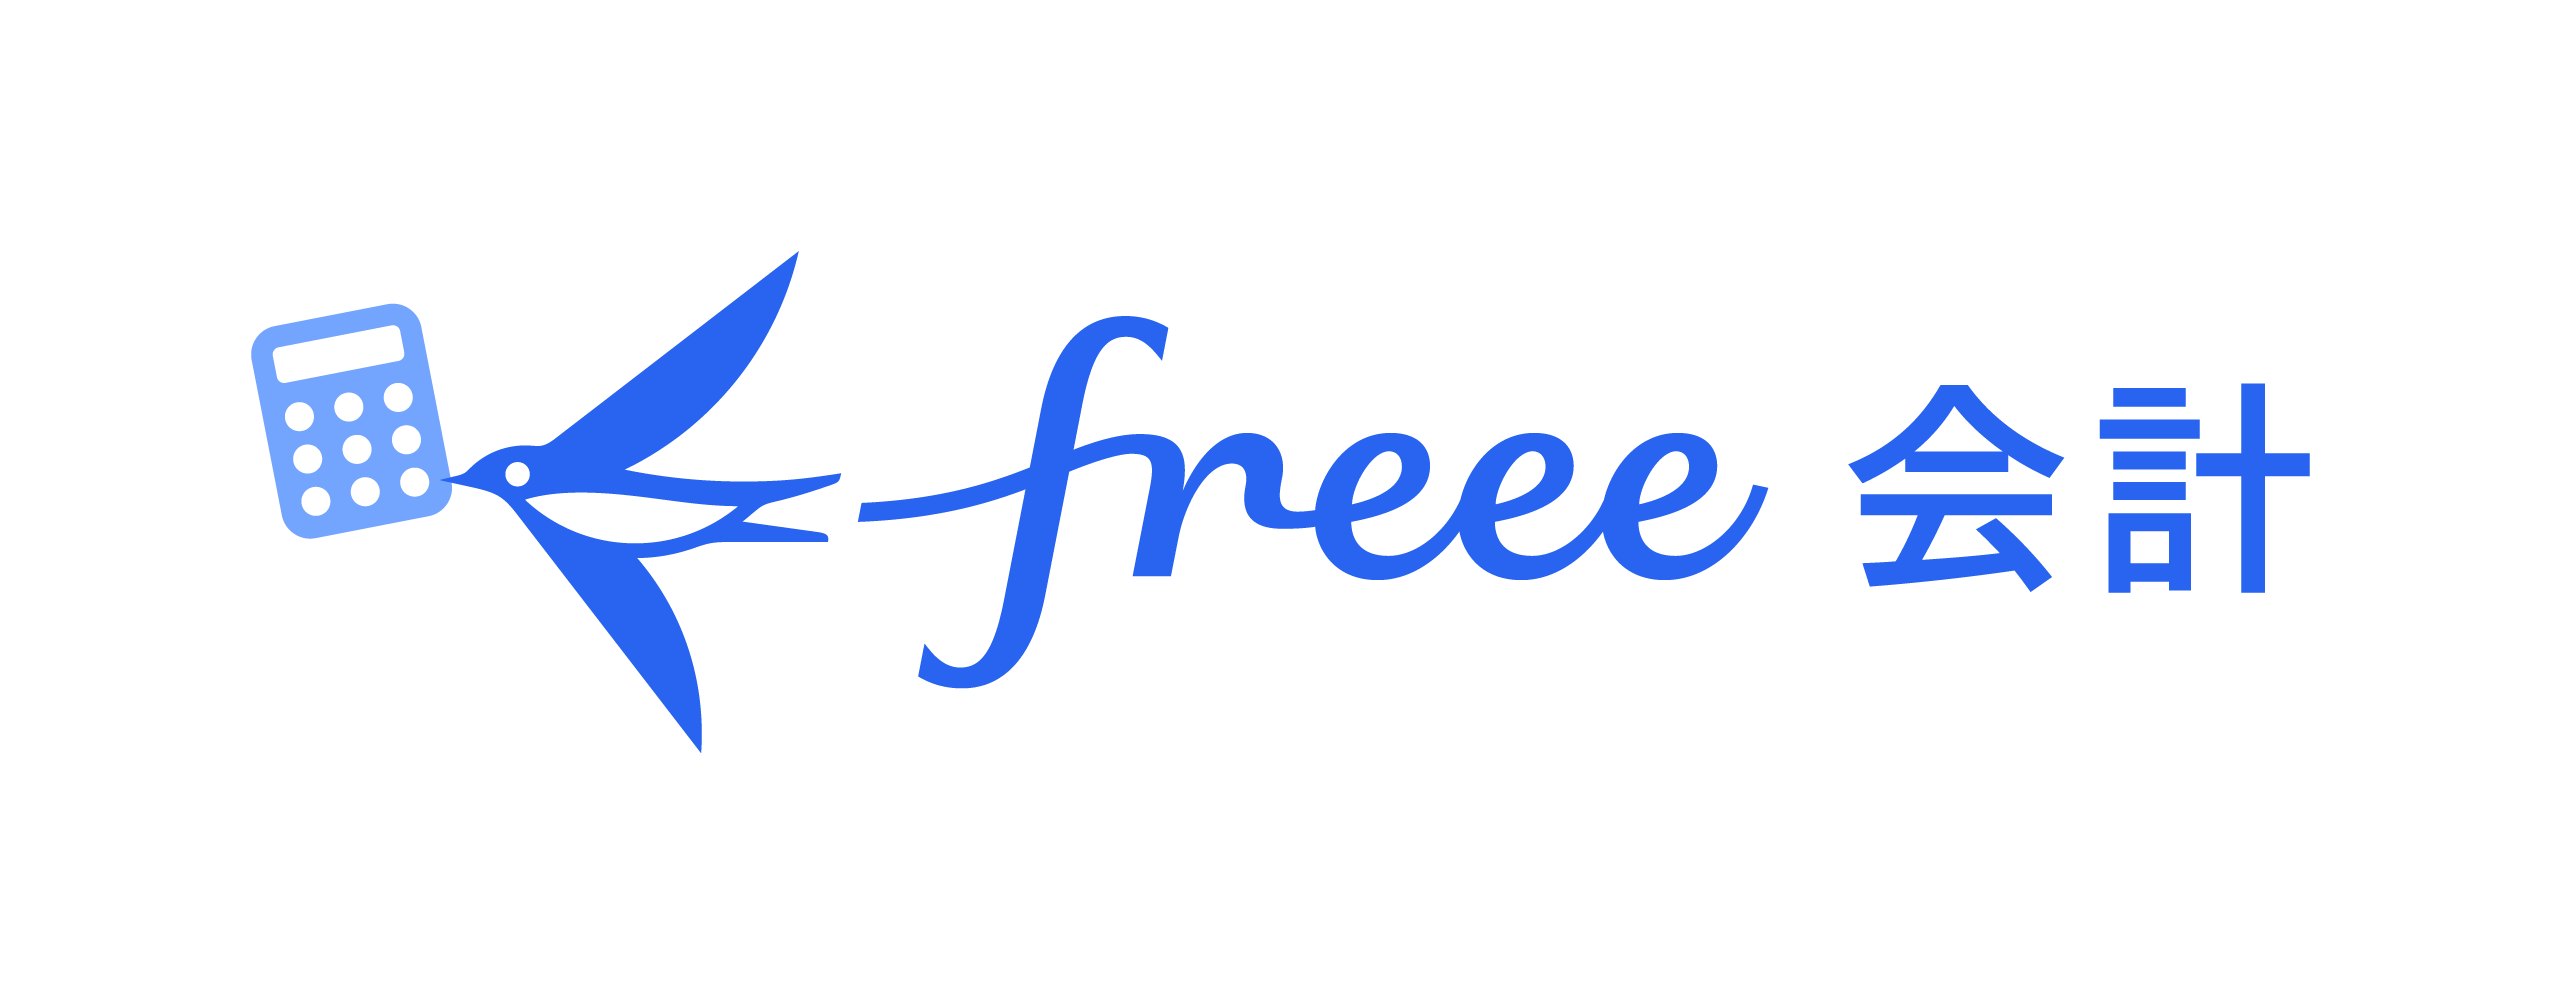 Freee会計のロゴ